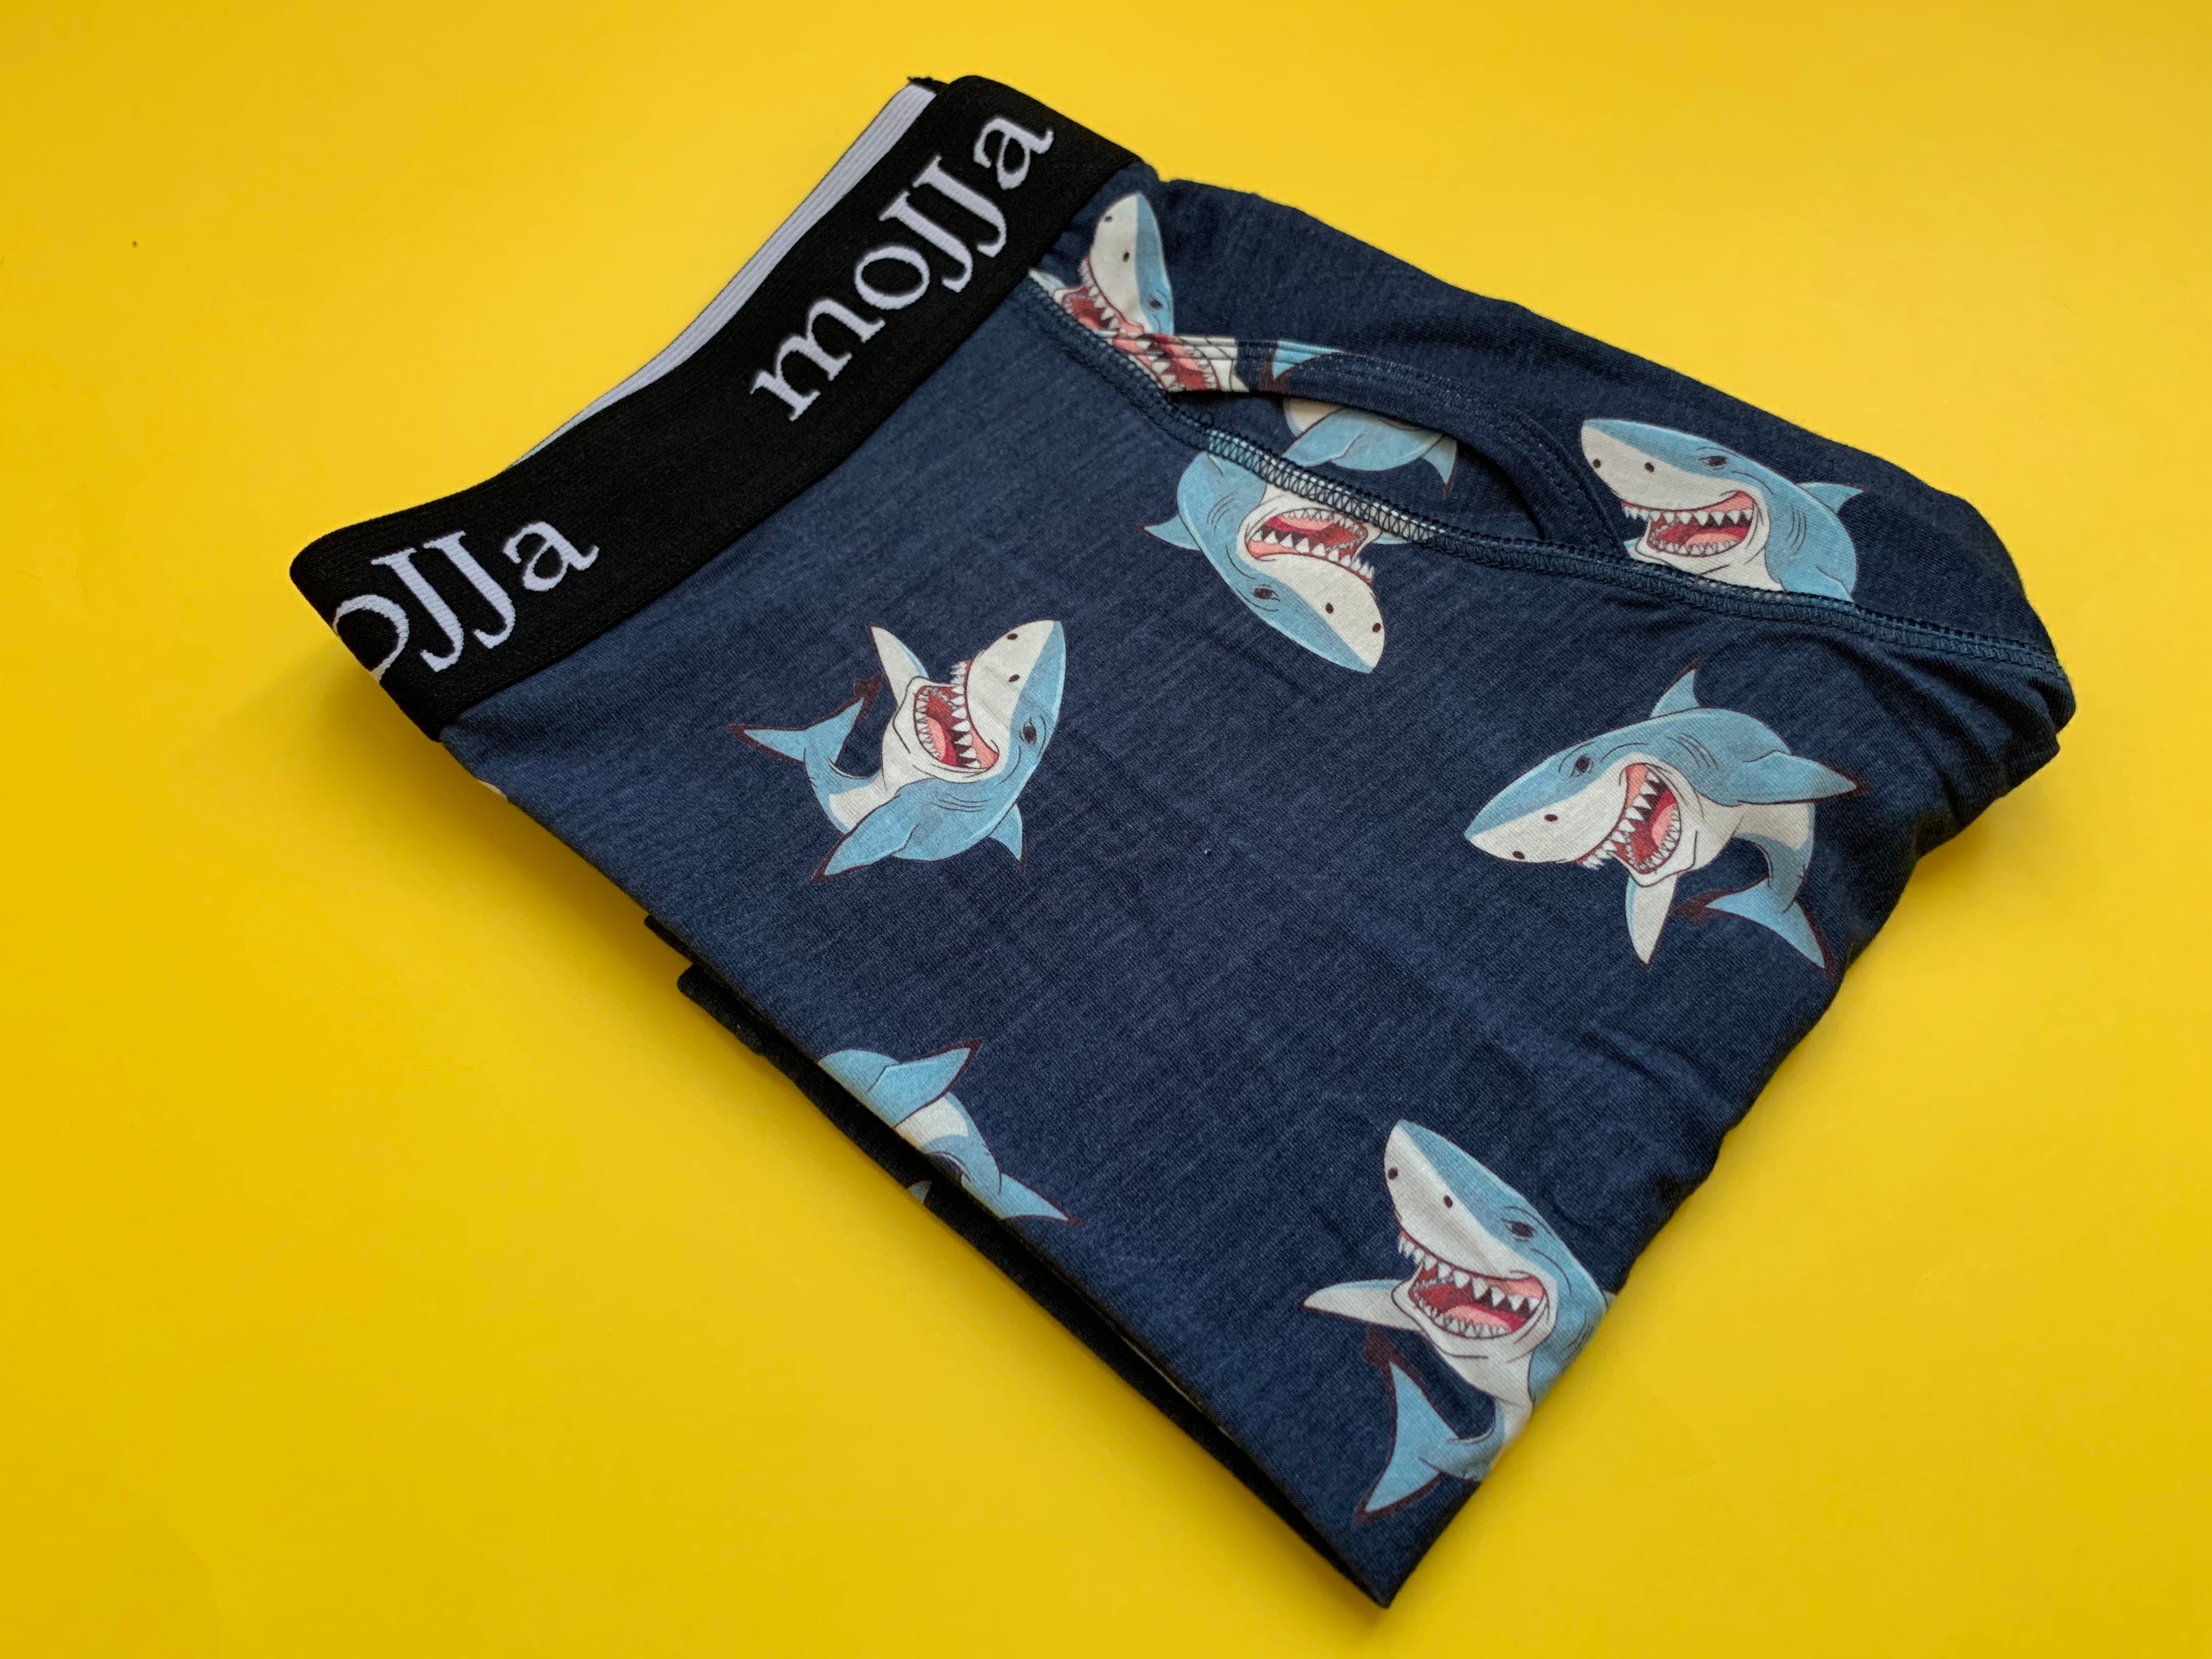 JHKKU Shark Men's Underwear Boxer Briefs Comfort Soft Boxer Briefs